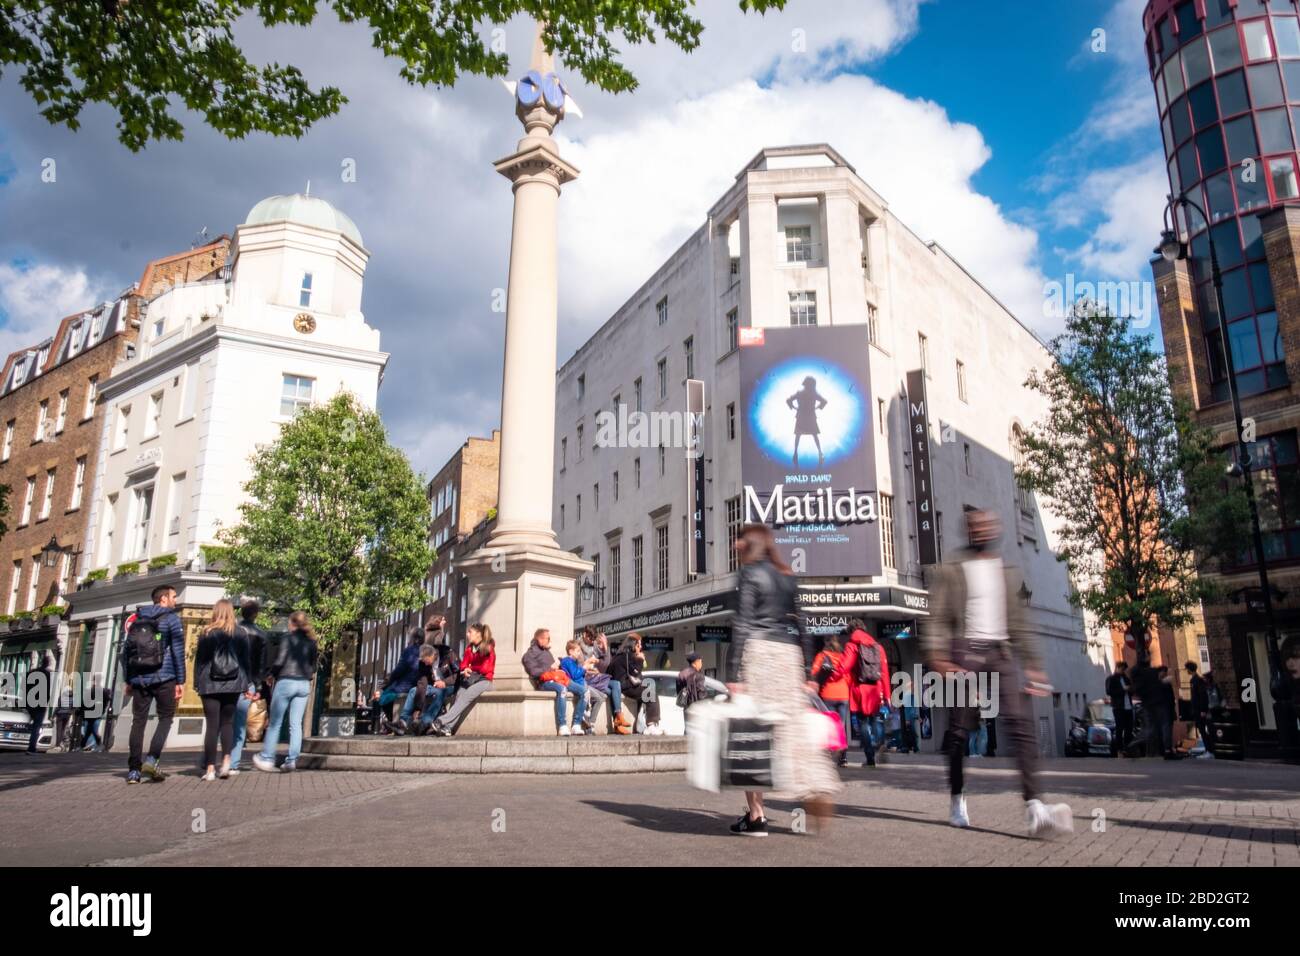 LONDRES- el Teatro Cambridge en Severn Dials en el West End londinense mostrando Matilda el Musical Foto de stock